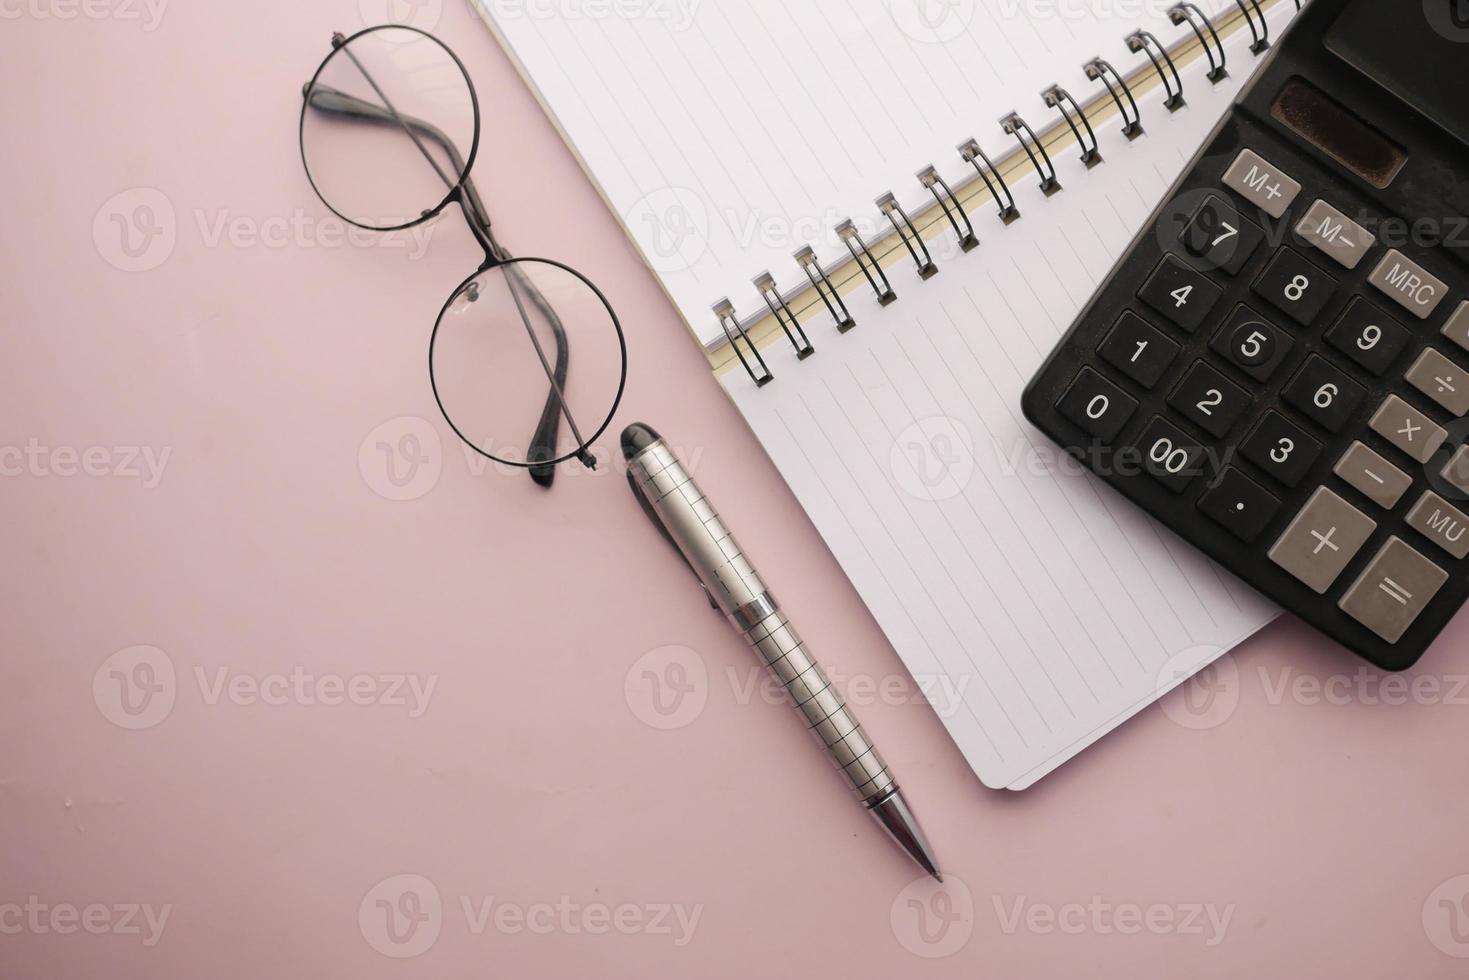 zwarte kleur rekenmachine en notitieblok op gekleurde achtergrond foto